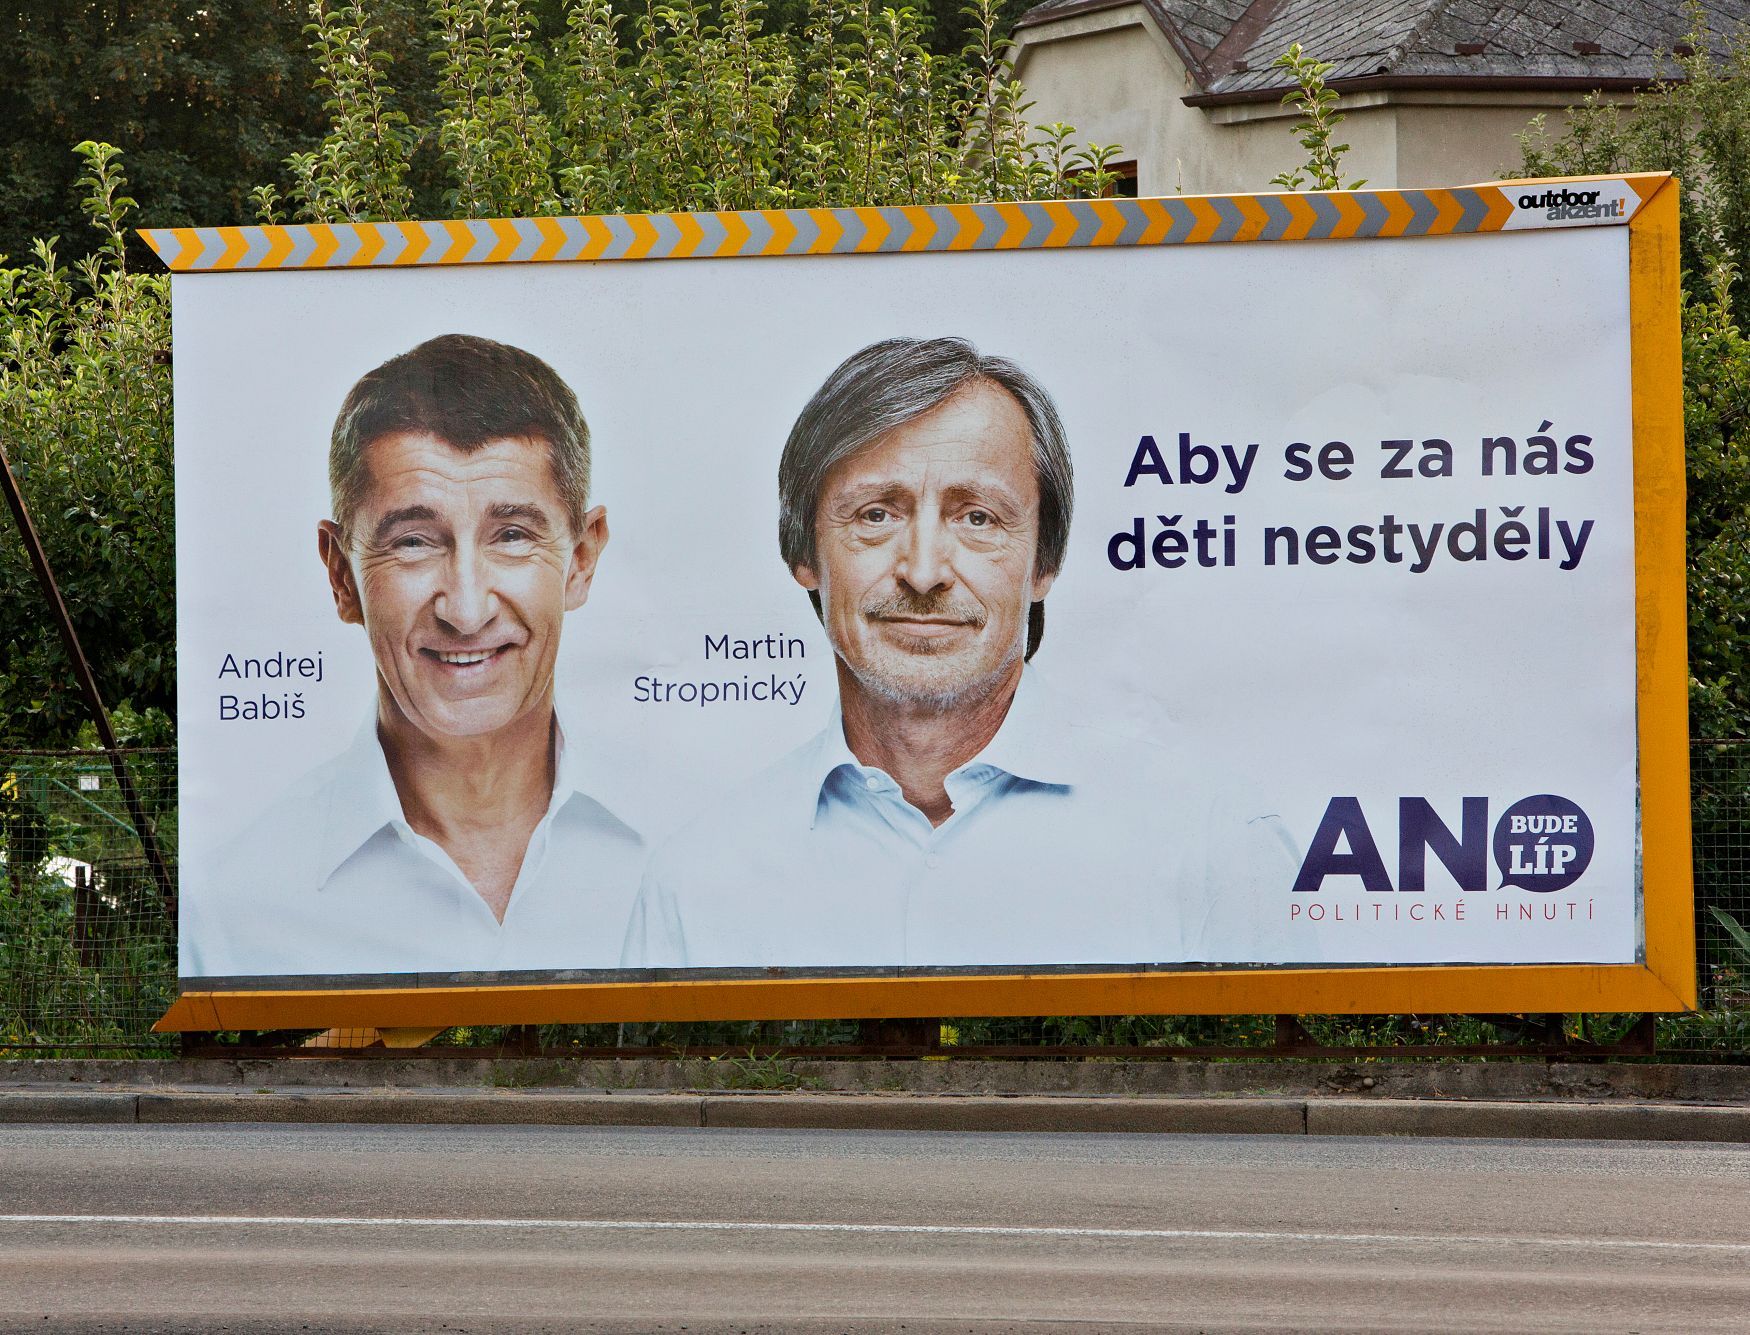 Babiš Stropnický billboard volby 2013 Aby se za nás děti nestyděly